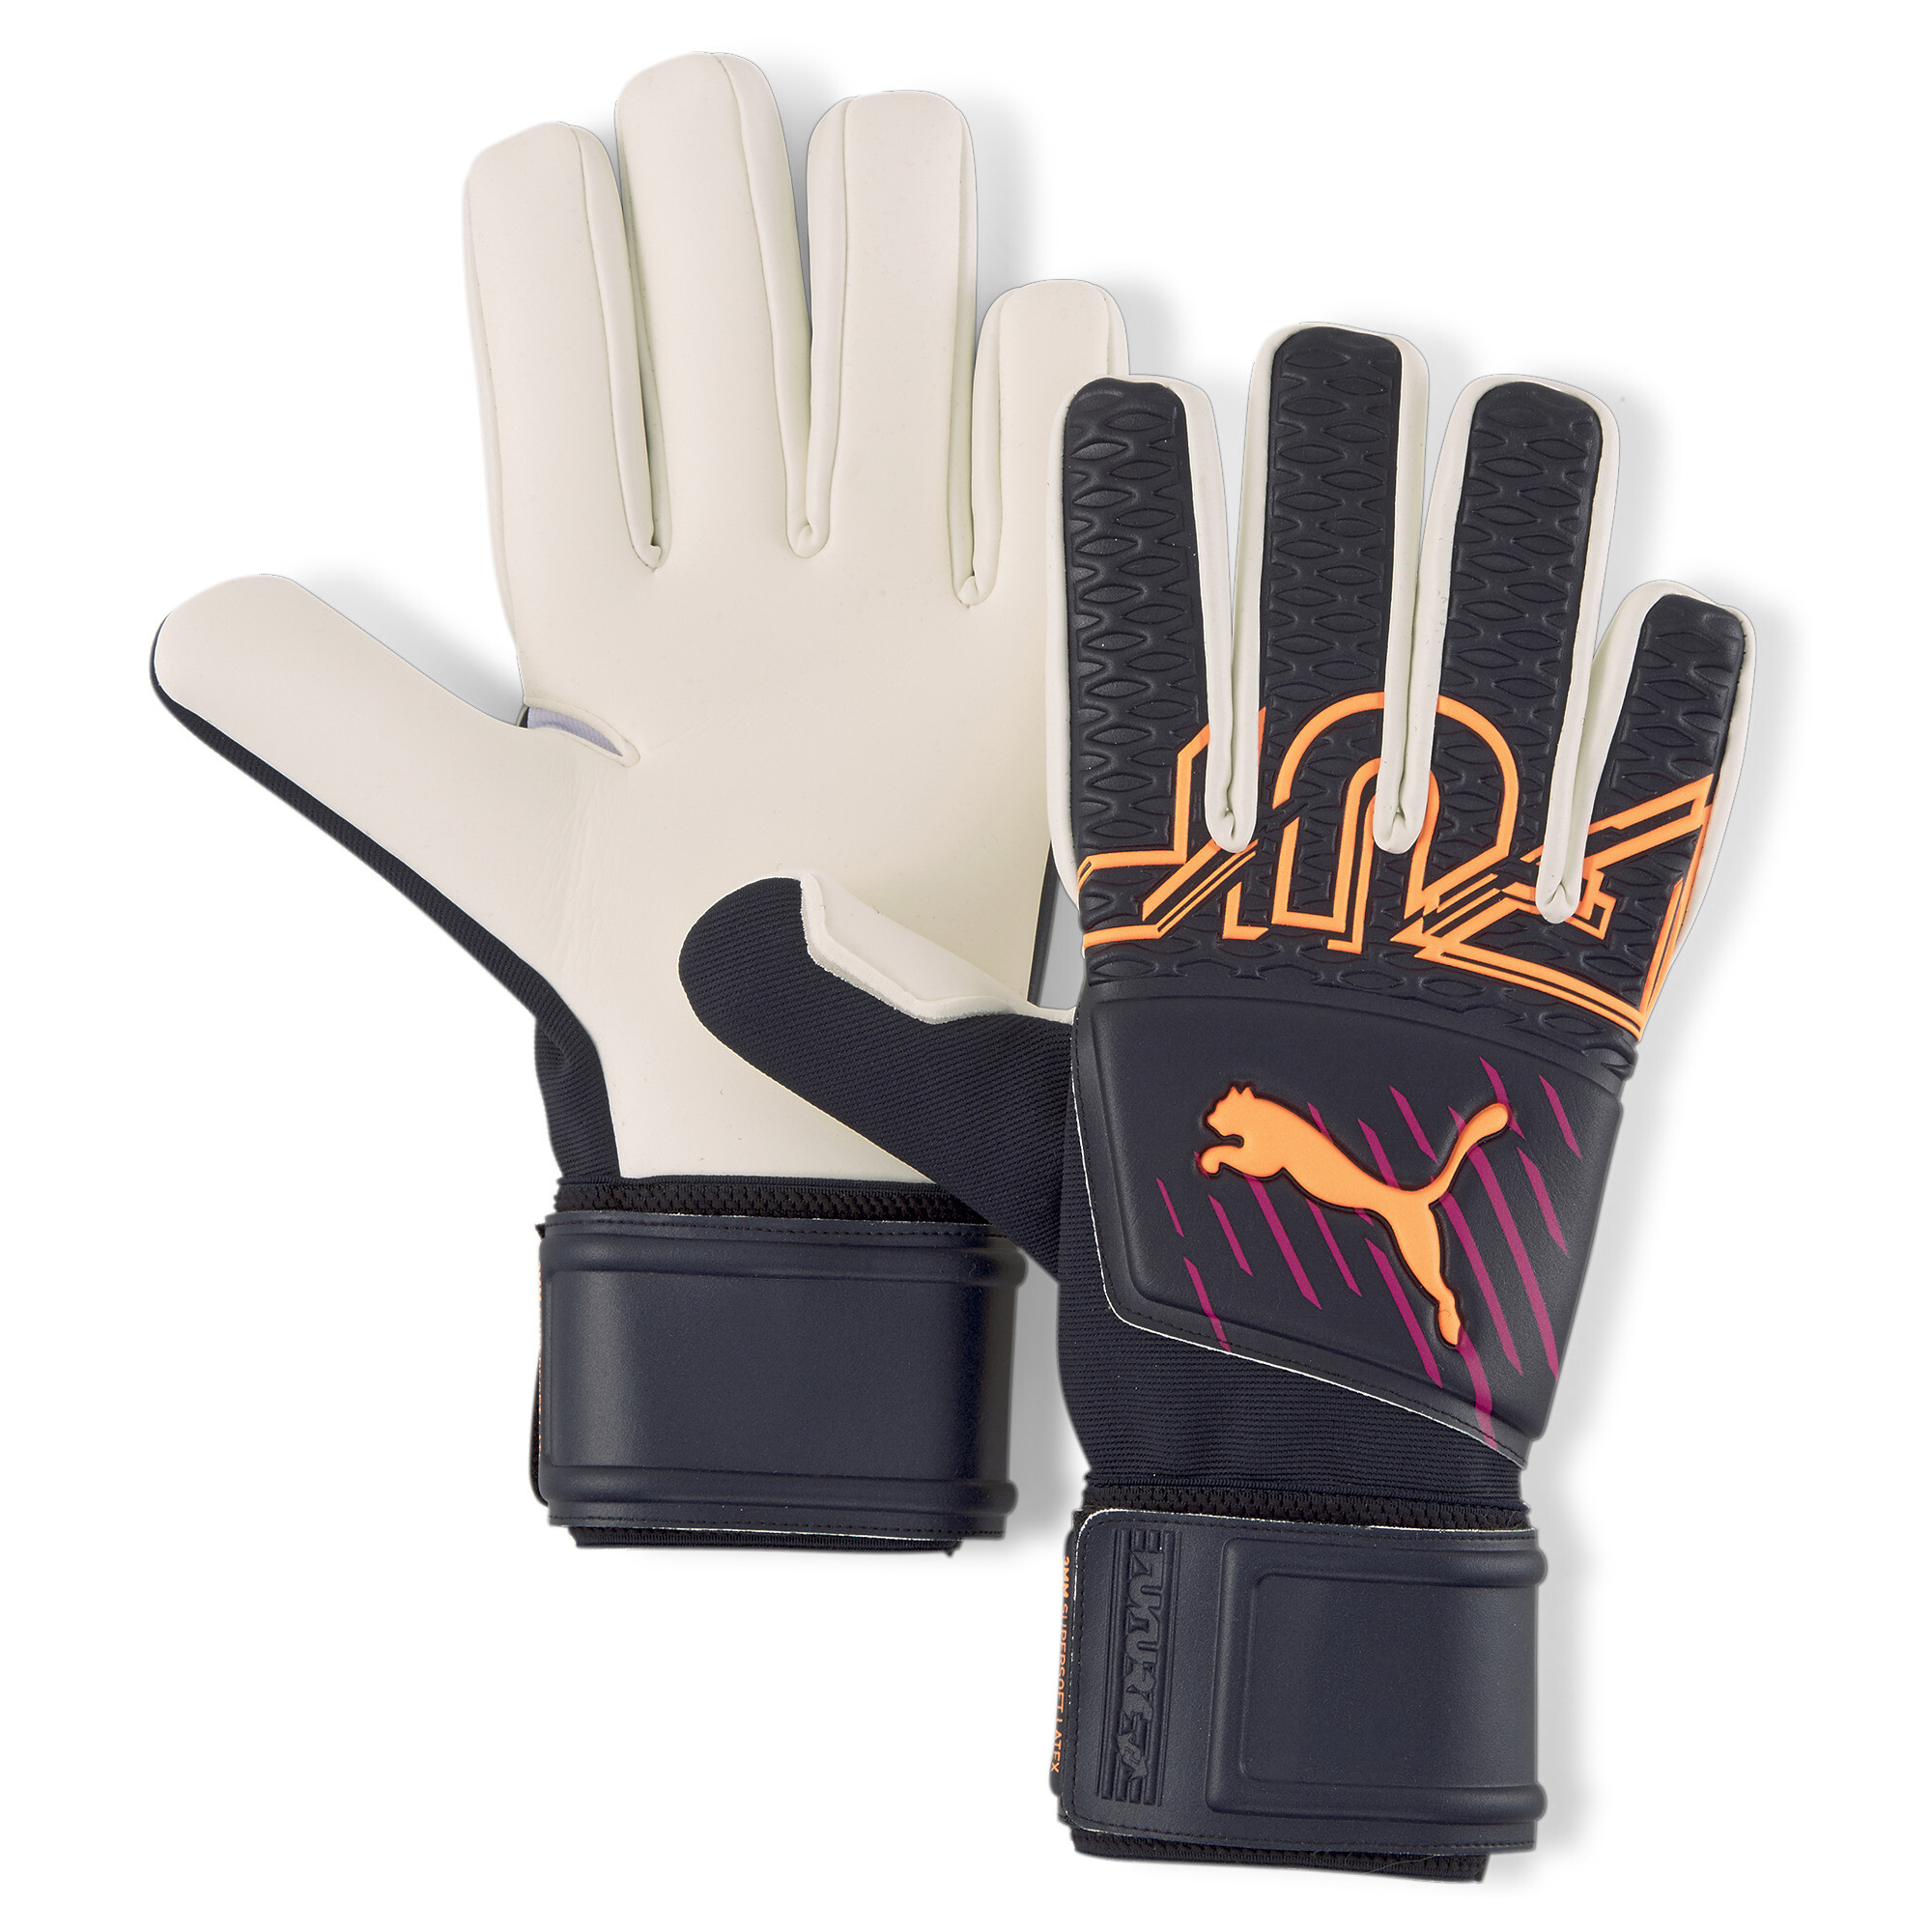 Puma FUTURE Grip 3 Negative Cut Goalkeeper Gloves, Blue, Size 5, Accessories